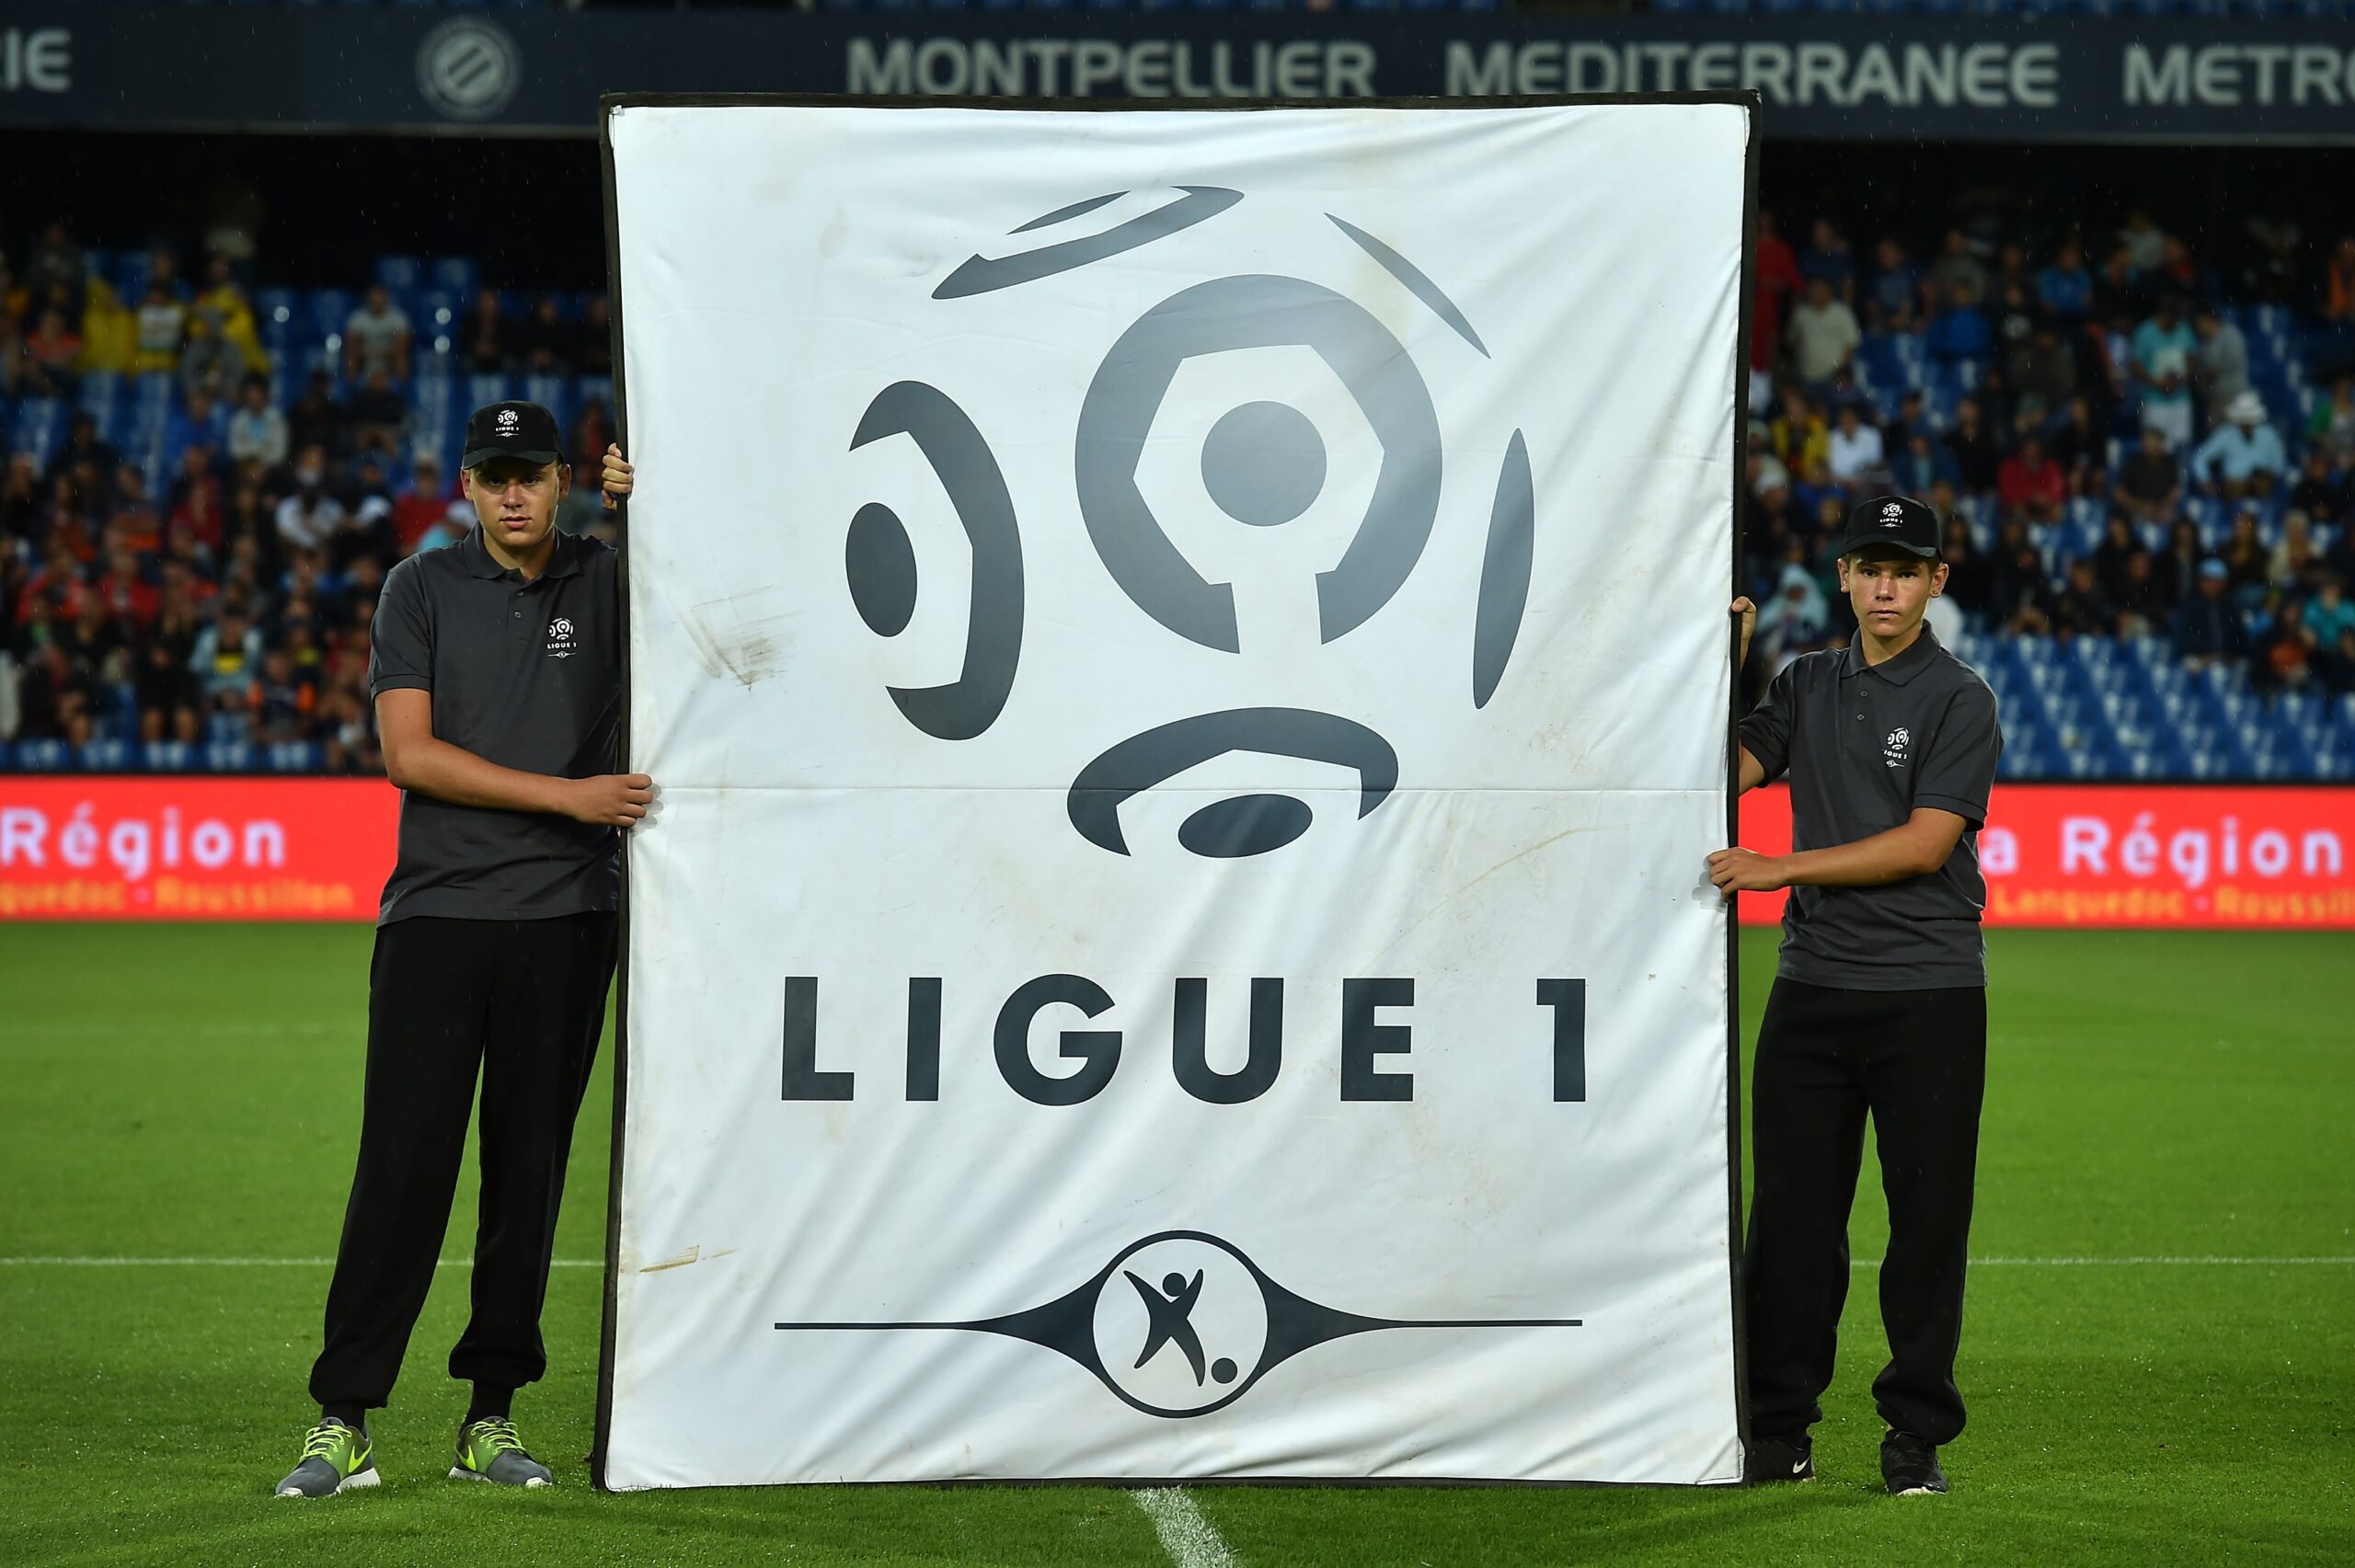 Aufatmen in der Ligue 1! Canal+ übernimmt die TV-Rechte bis Saisonende